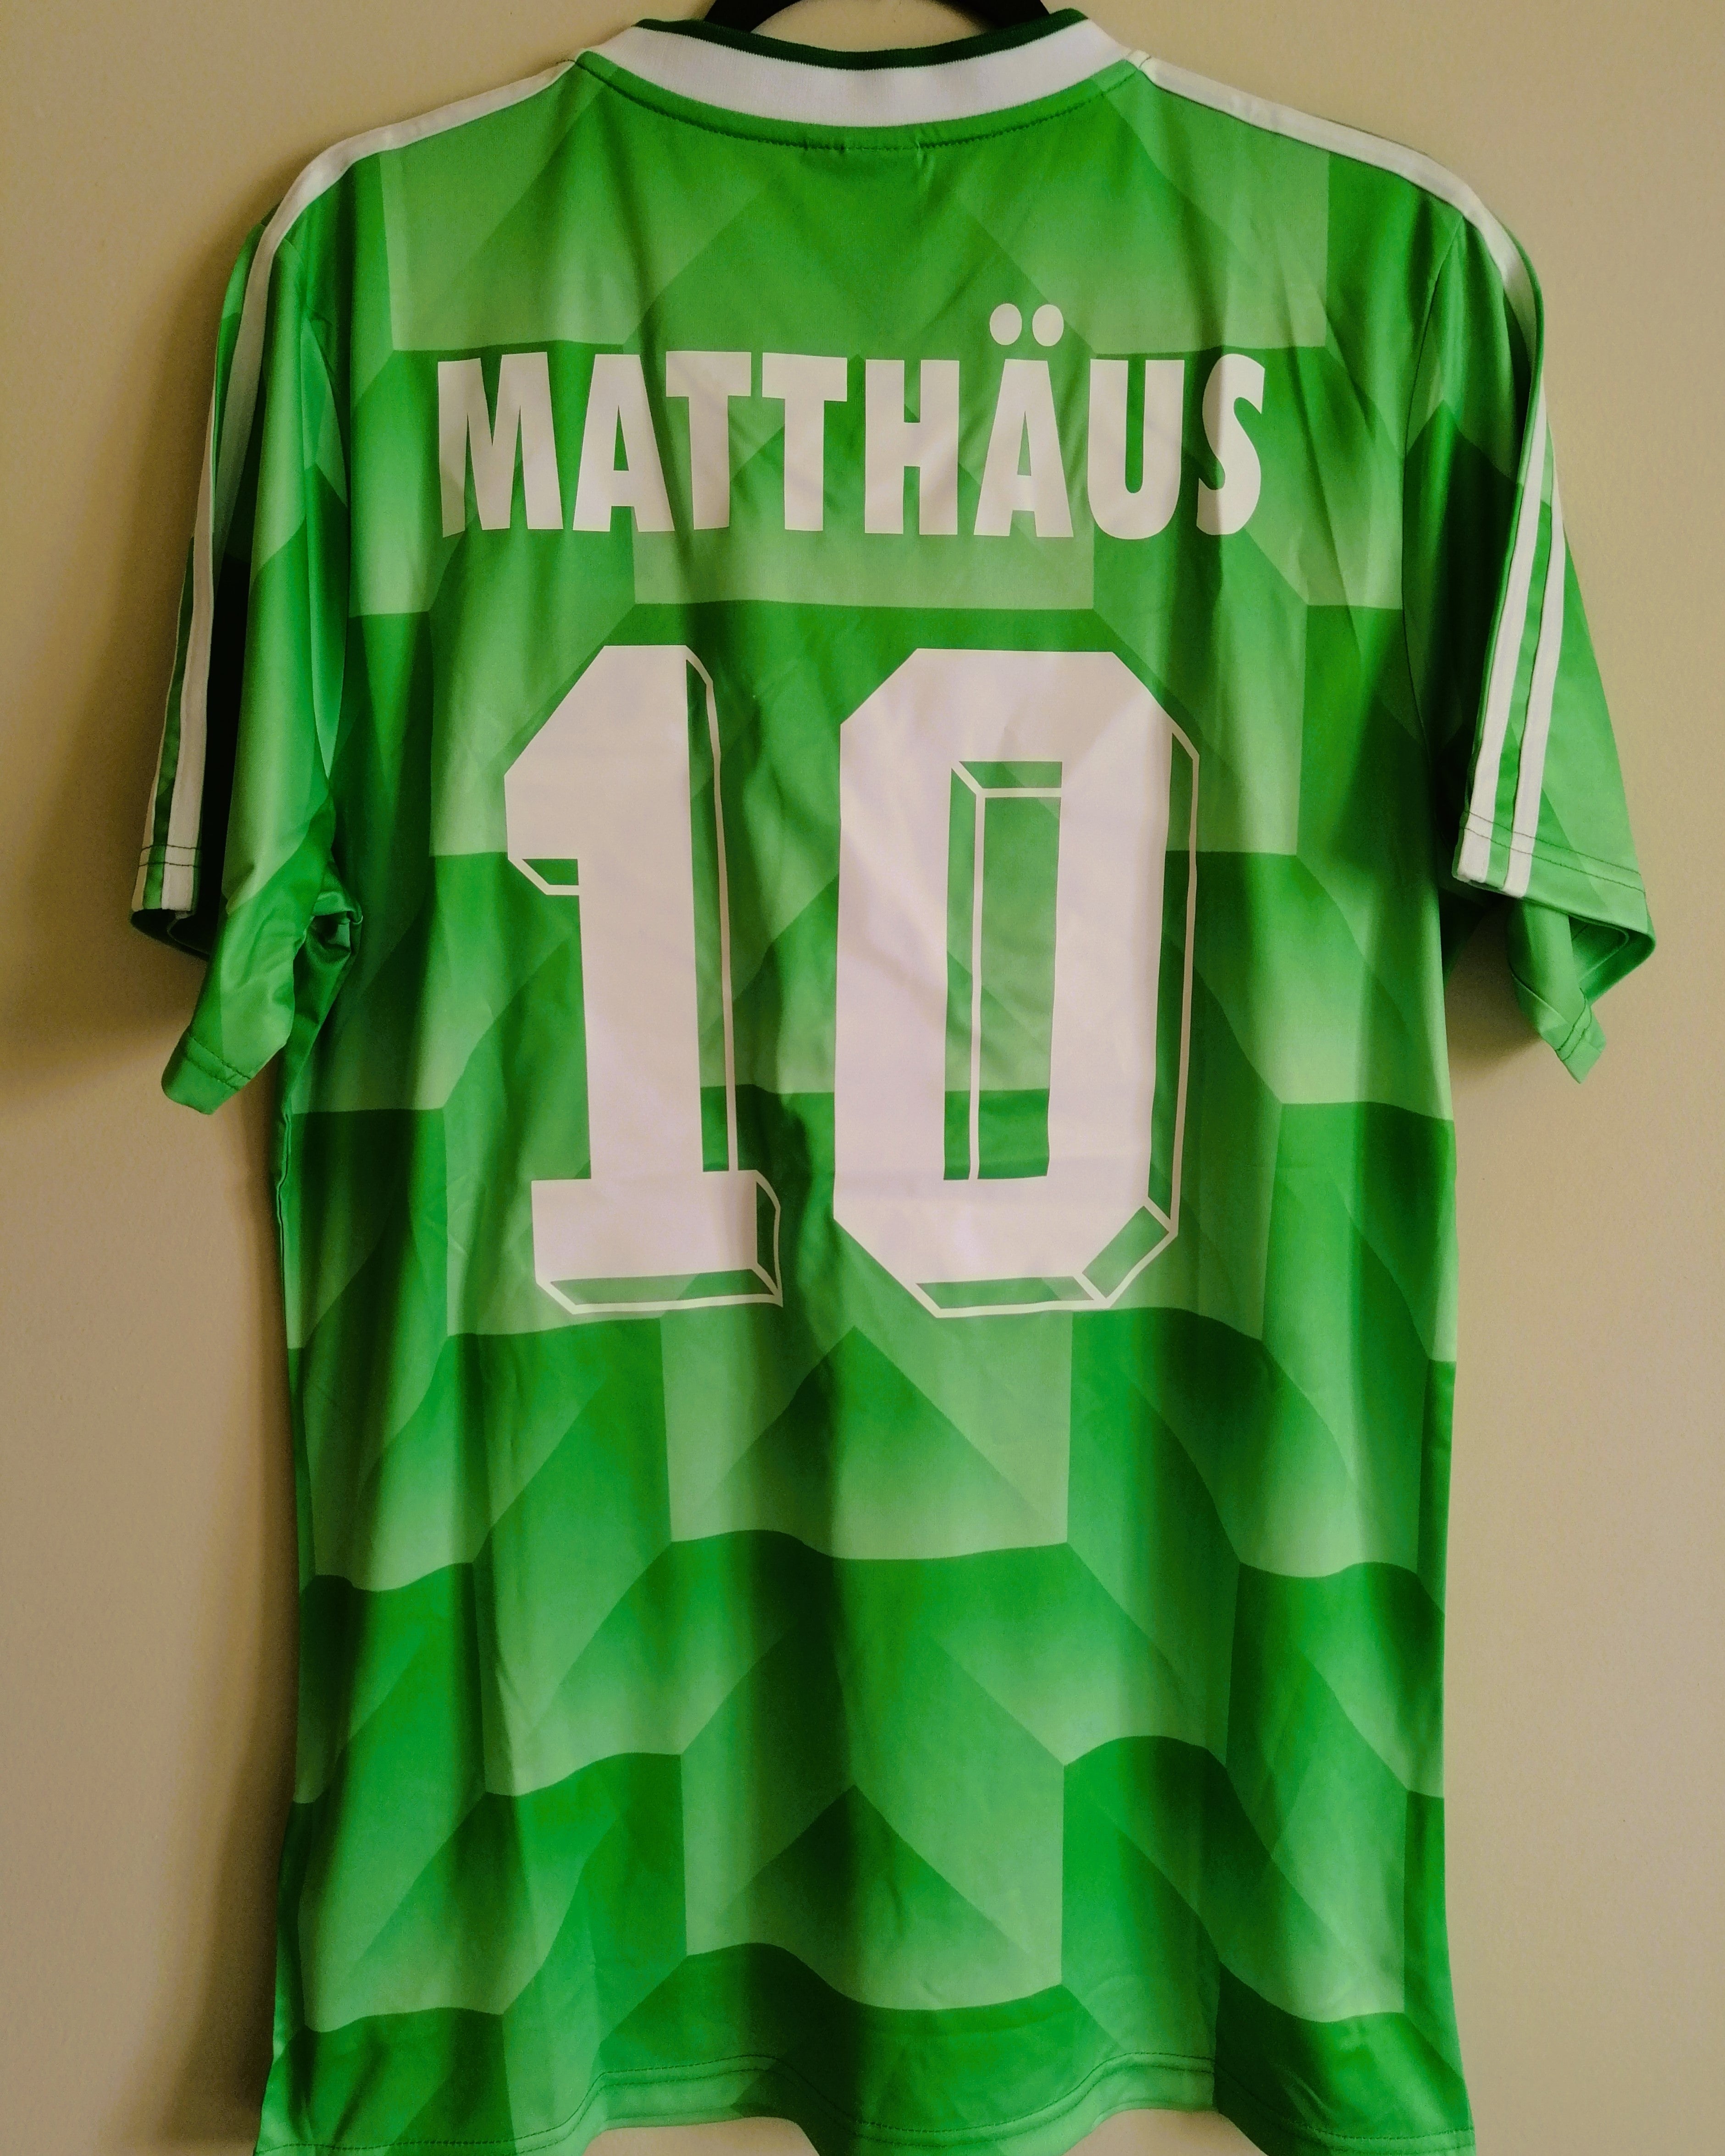 MATTHAUS LOTHAR 1990-91 (Ger)